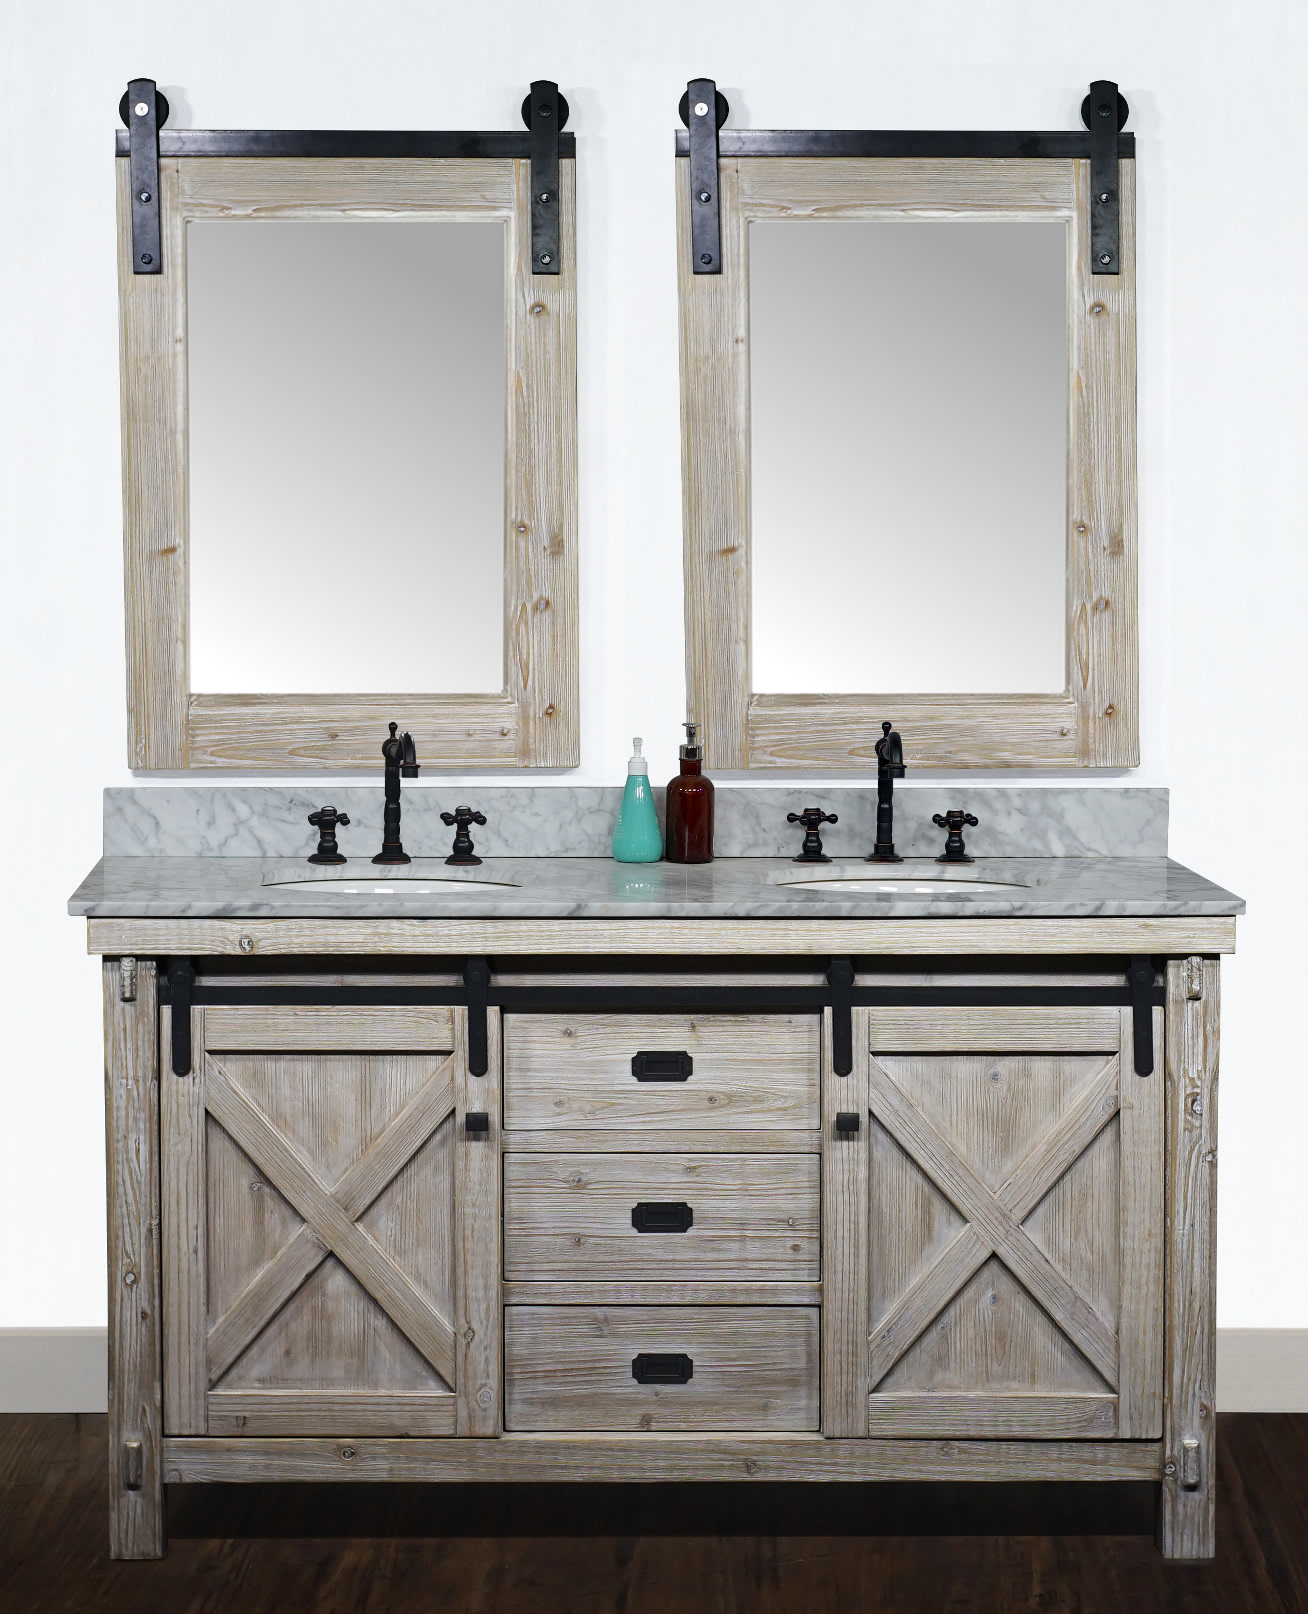 60" Rustic Solid Fir Barn Door Style Double Sink Vanity - No Faucet with Countertop Options